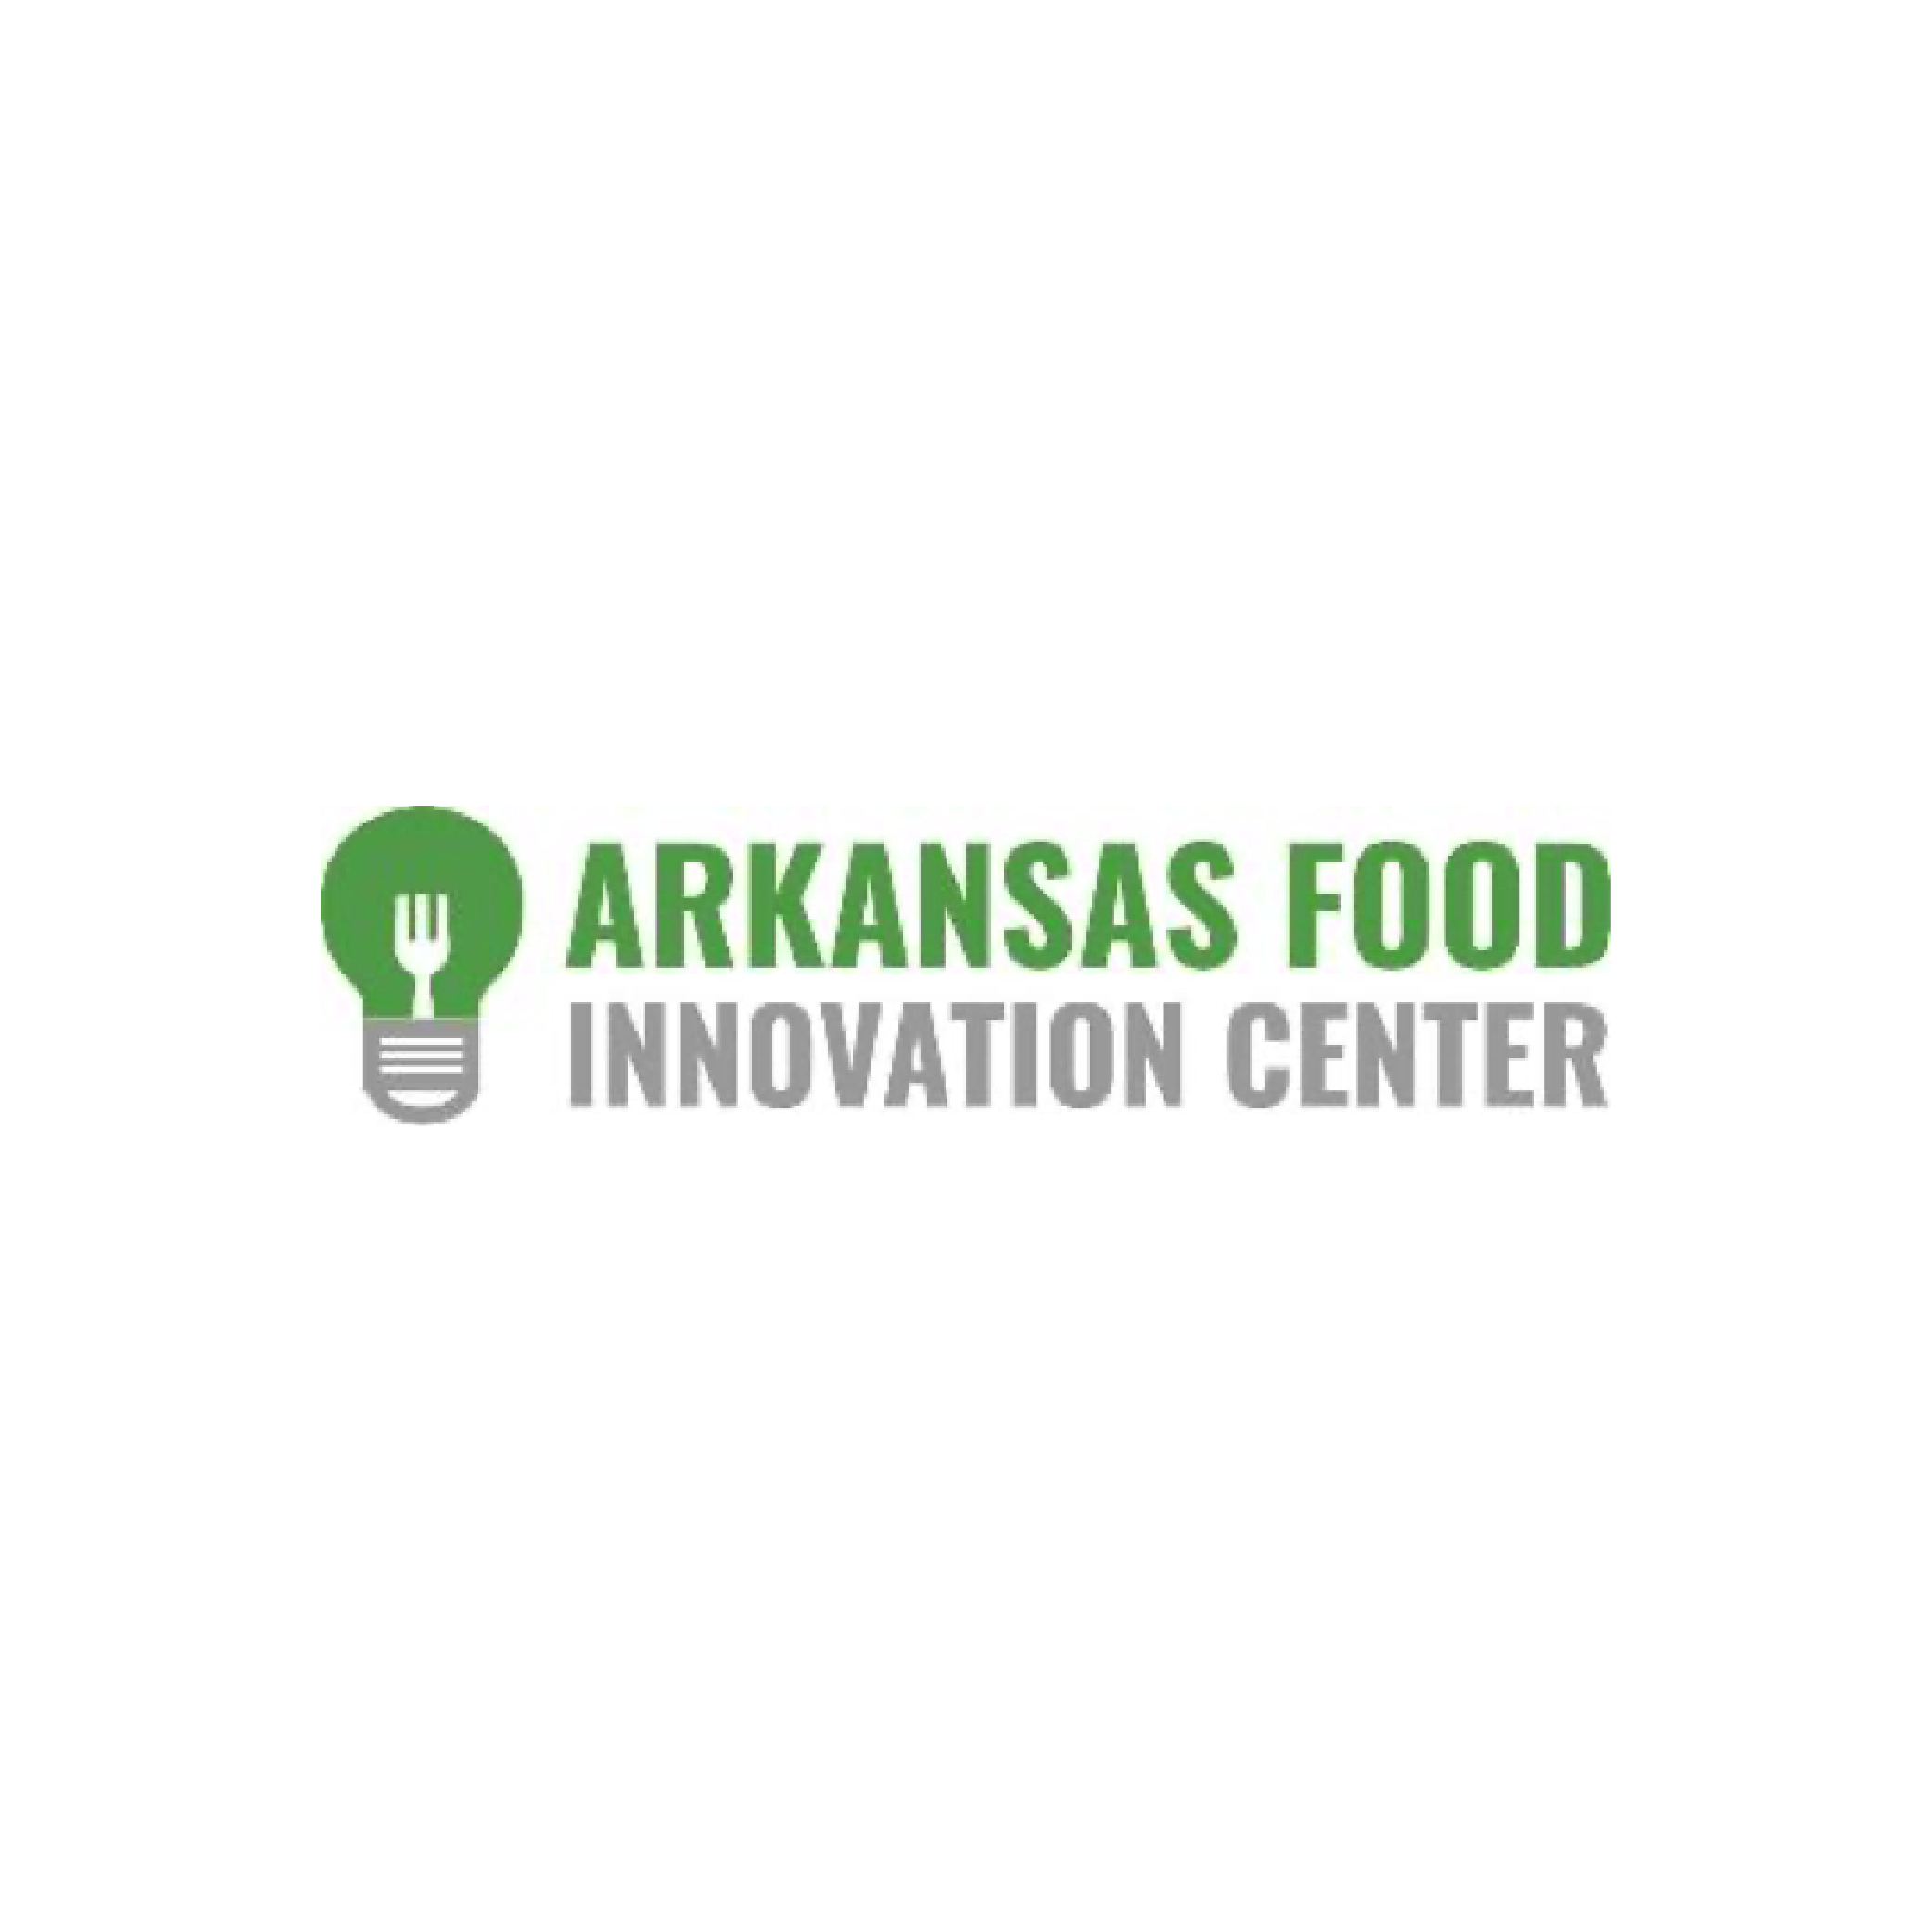 Arkansas Food Innovation Center